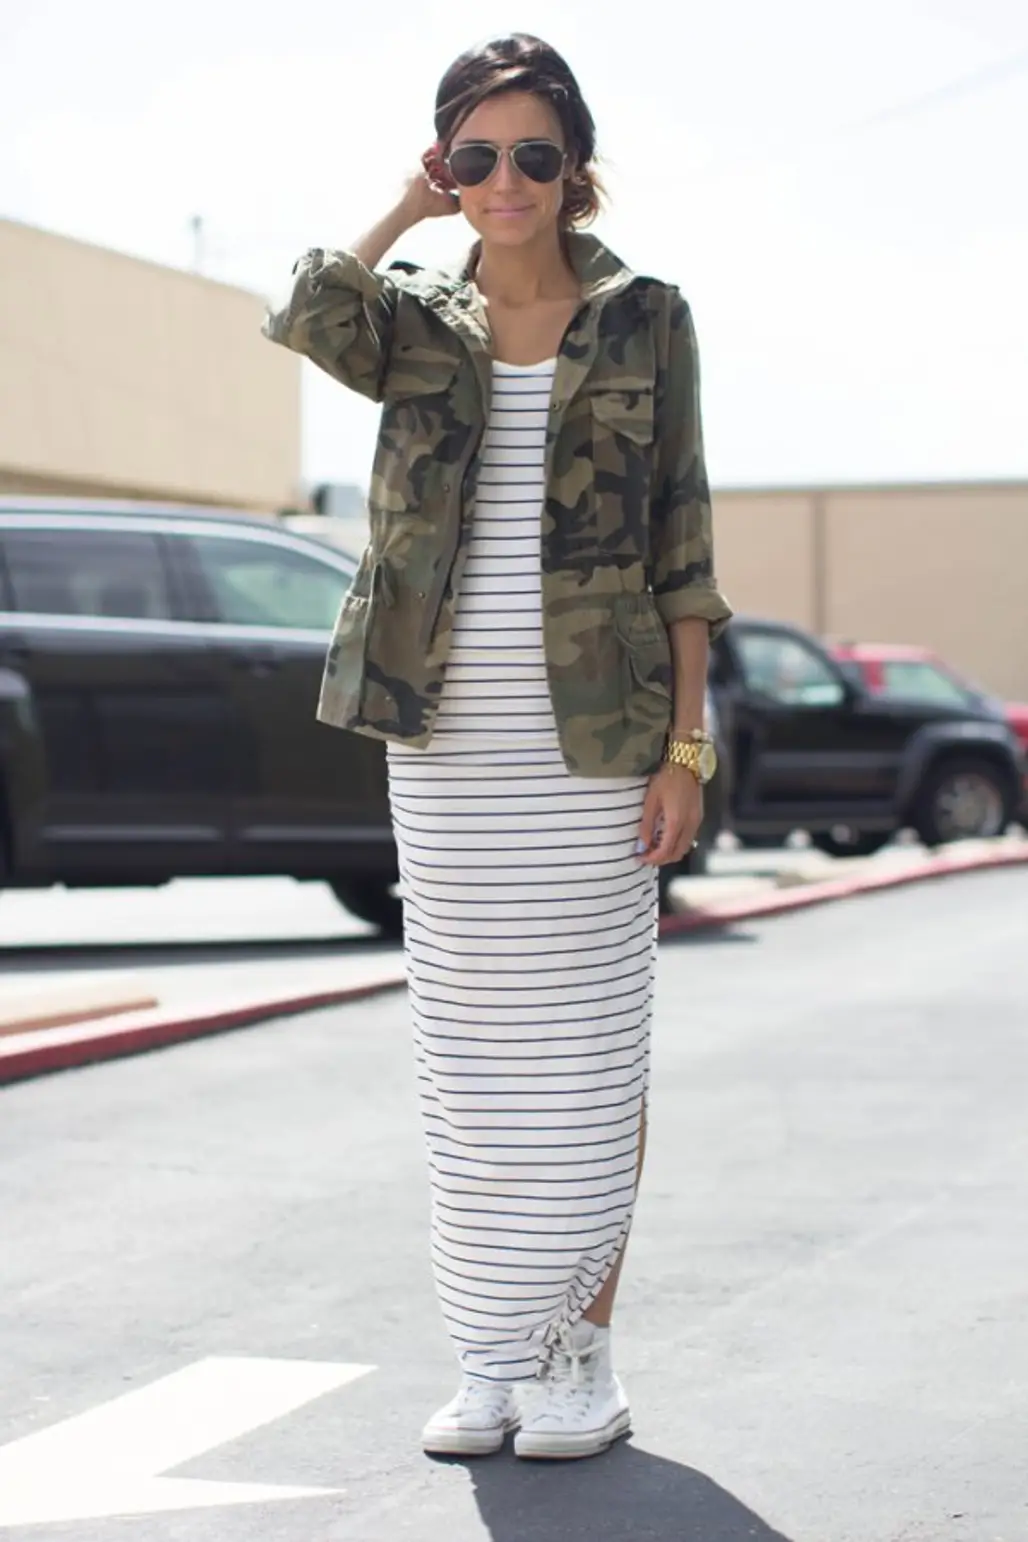 Striped Dress + Camo Jacket